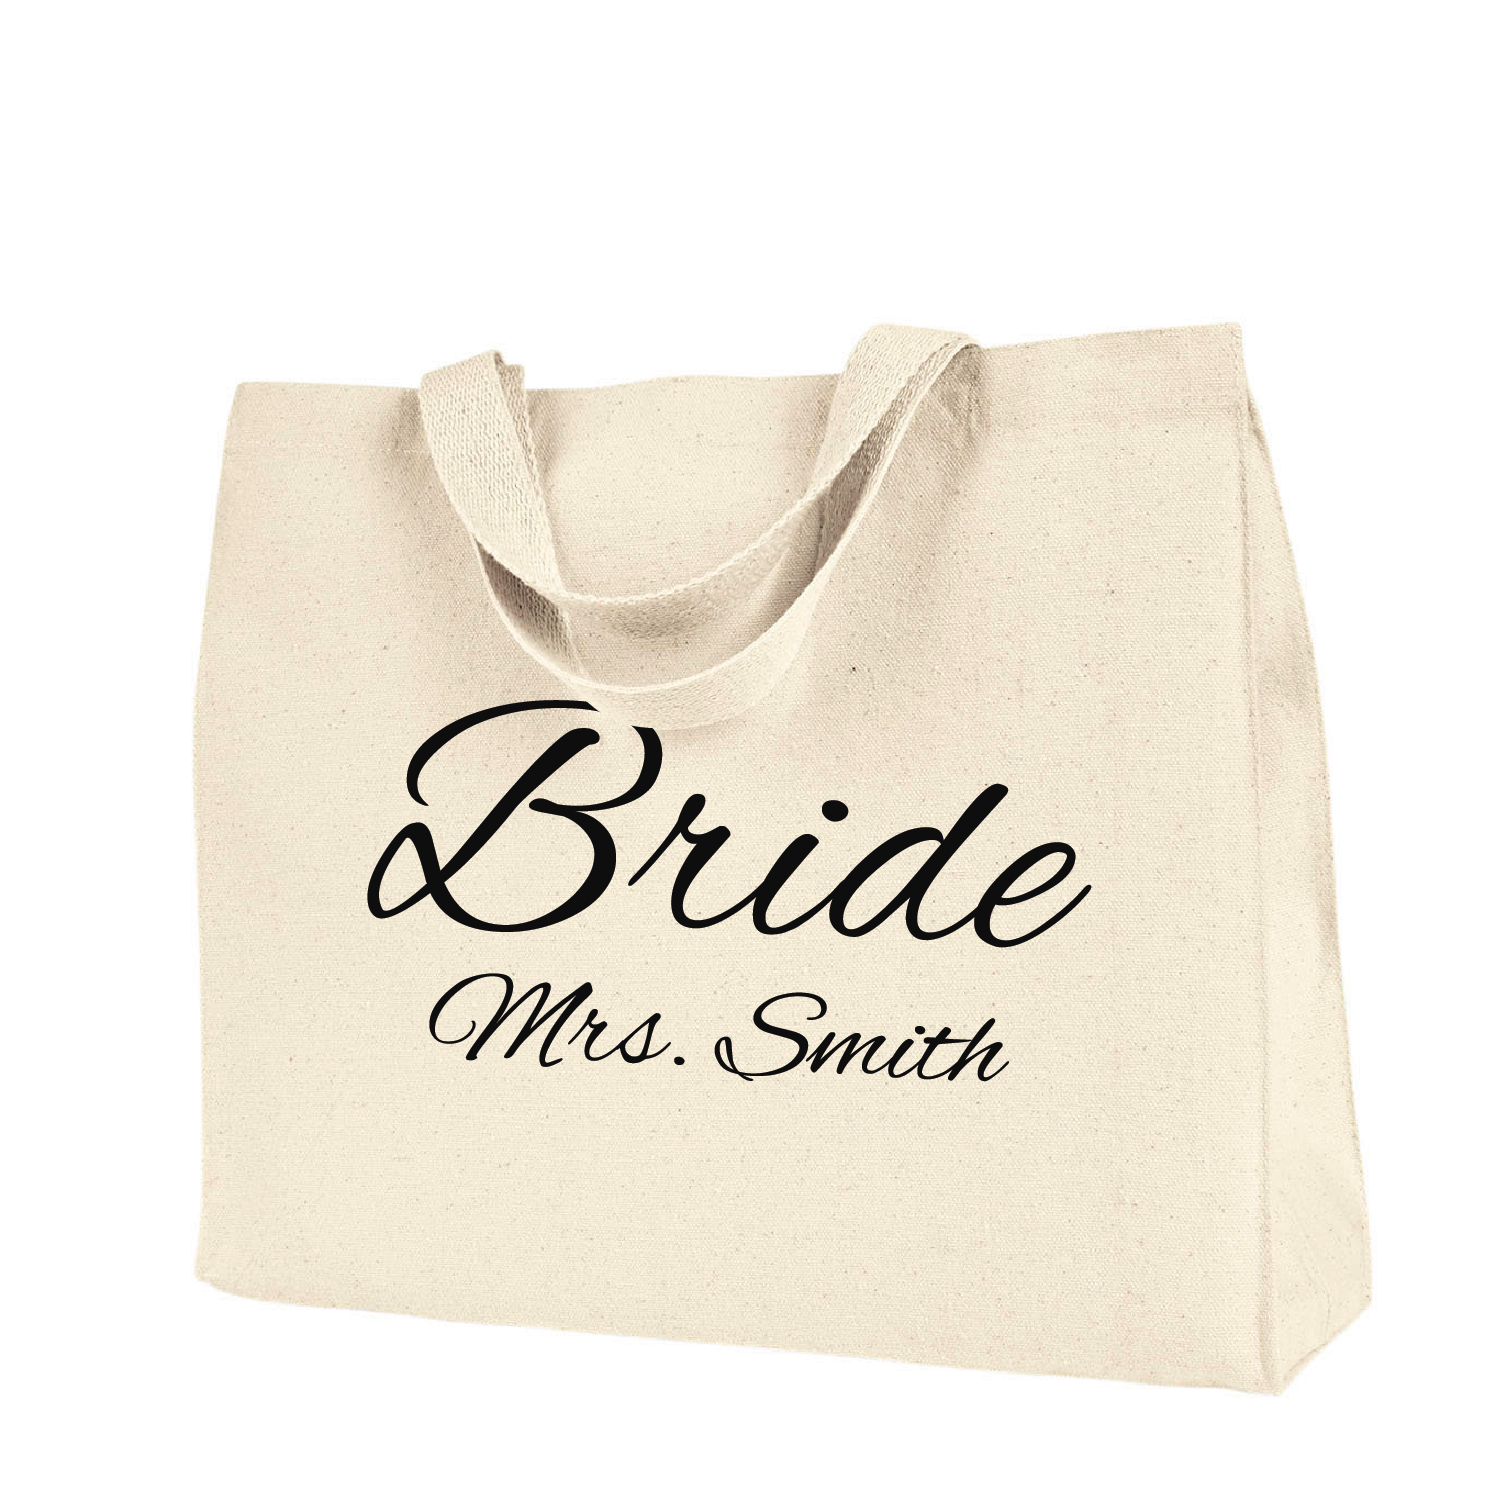 Bride - Mrs. Smith Tote wedding bag